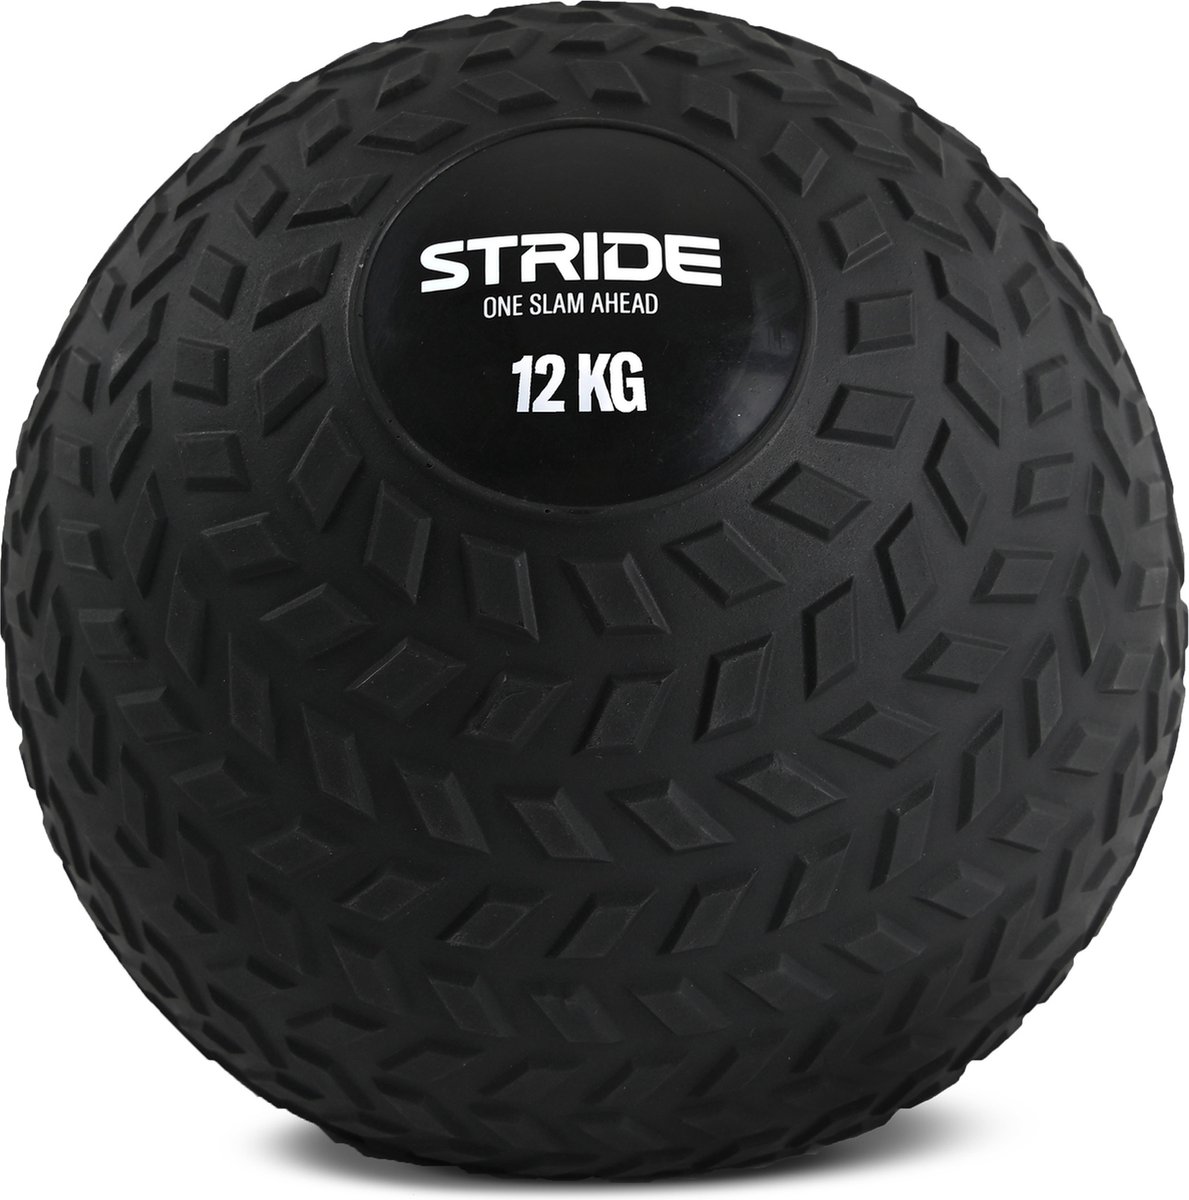 STRIDE Slam Ball 12 kg - Voor gevarieerde work-out - PVC Fitness Bal - Krachttraining, Gym, Crossfit, Sport